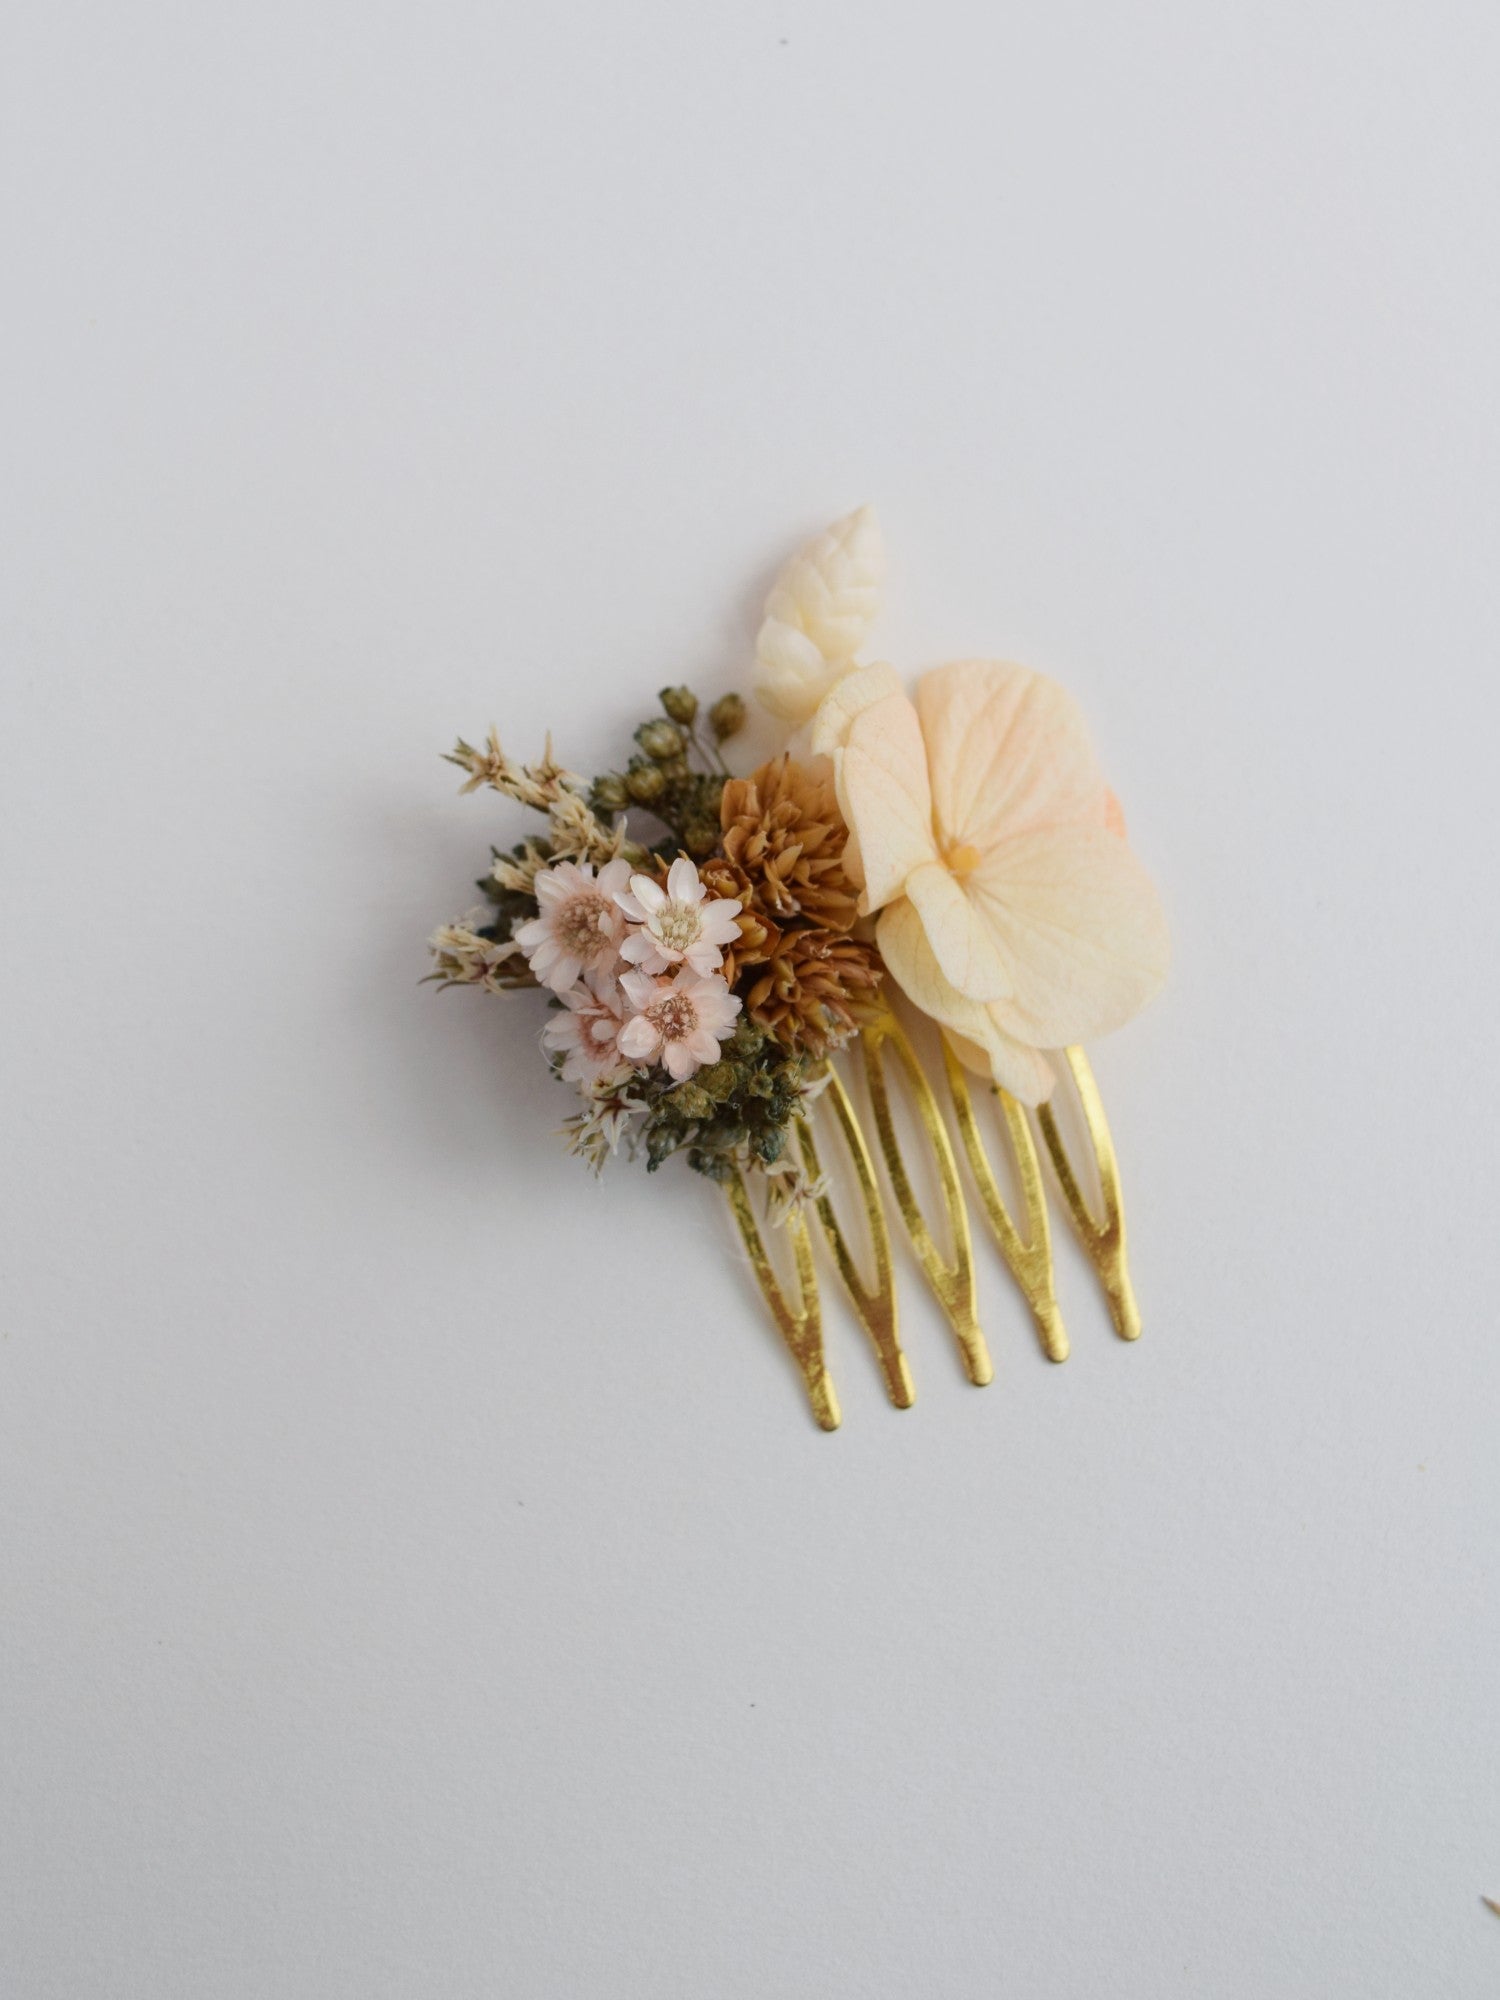 kleine gouden haarkam met bovenaan decoratie van droogbloemen zoals perzikkleurige hortensia, groene broom en witte breeza